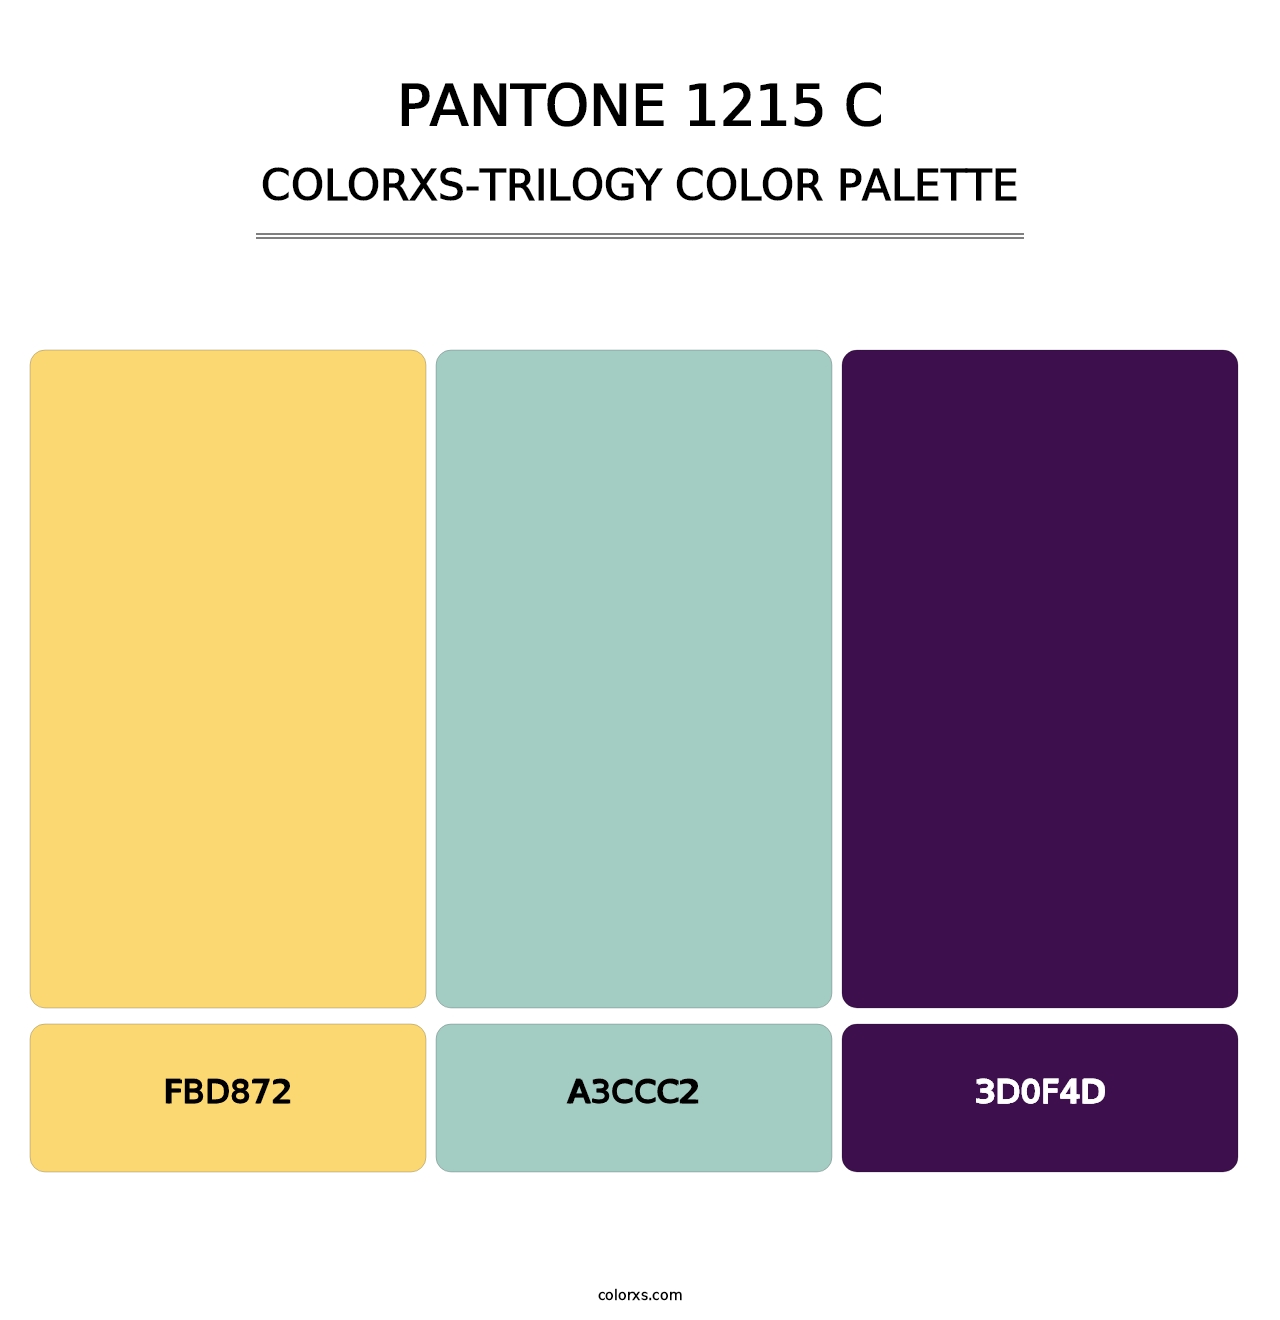 PANTONE 1215 C - Colorxs Trilogy Palette